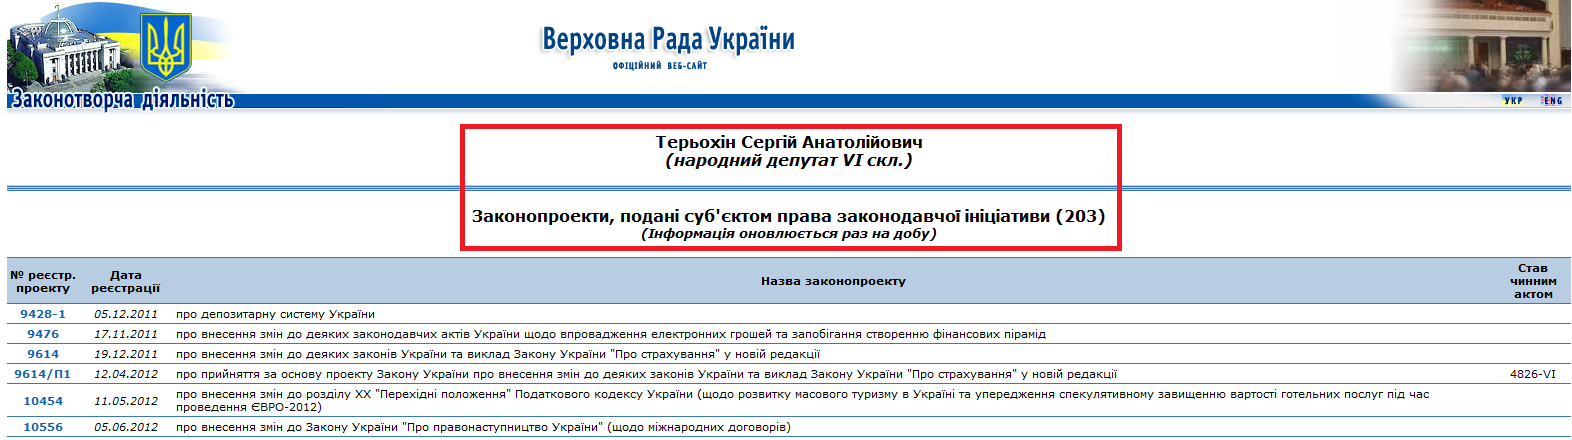 http://w1.c1.rada.gov.ua/pls/pt/reports.dep2?PERSON=979&SKL=7